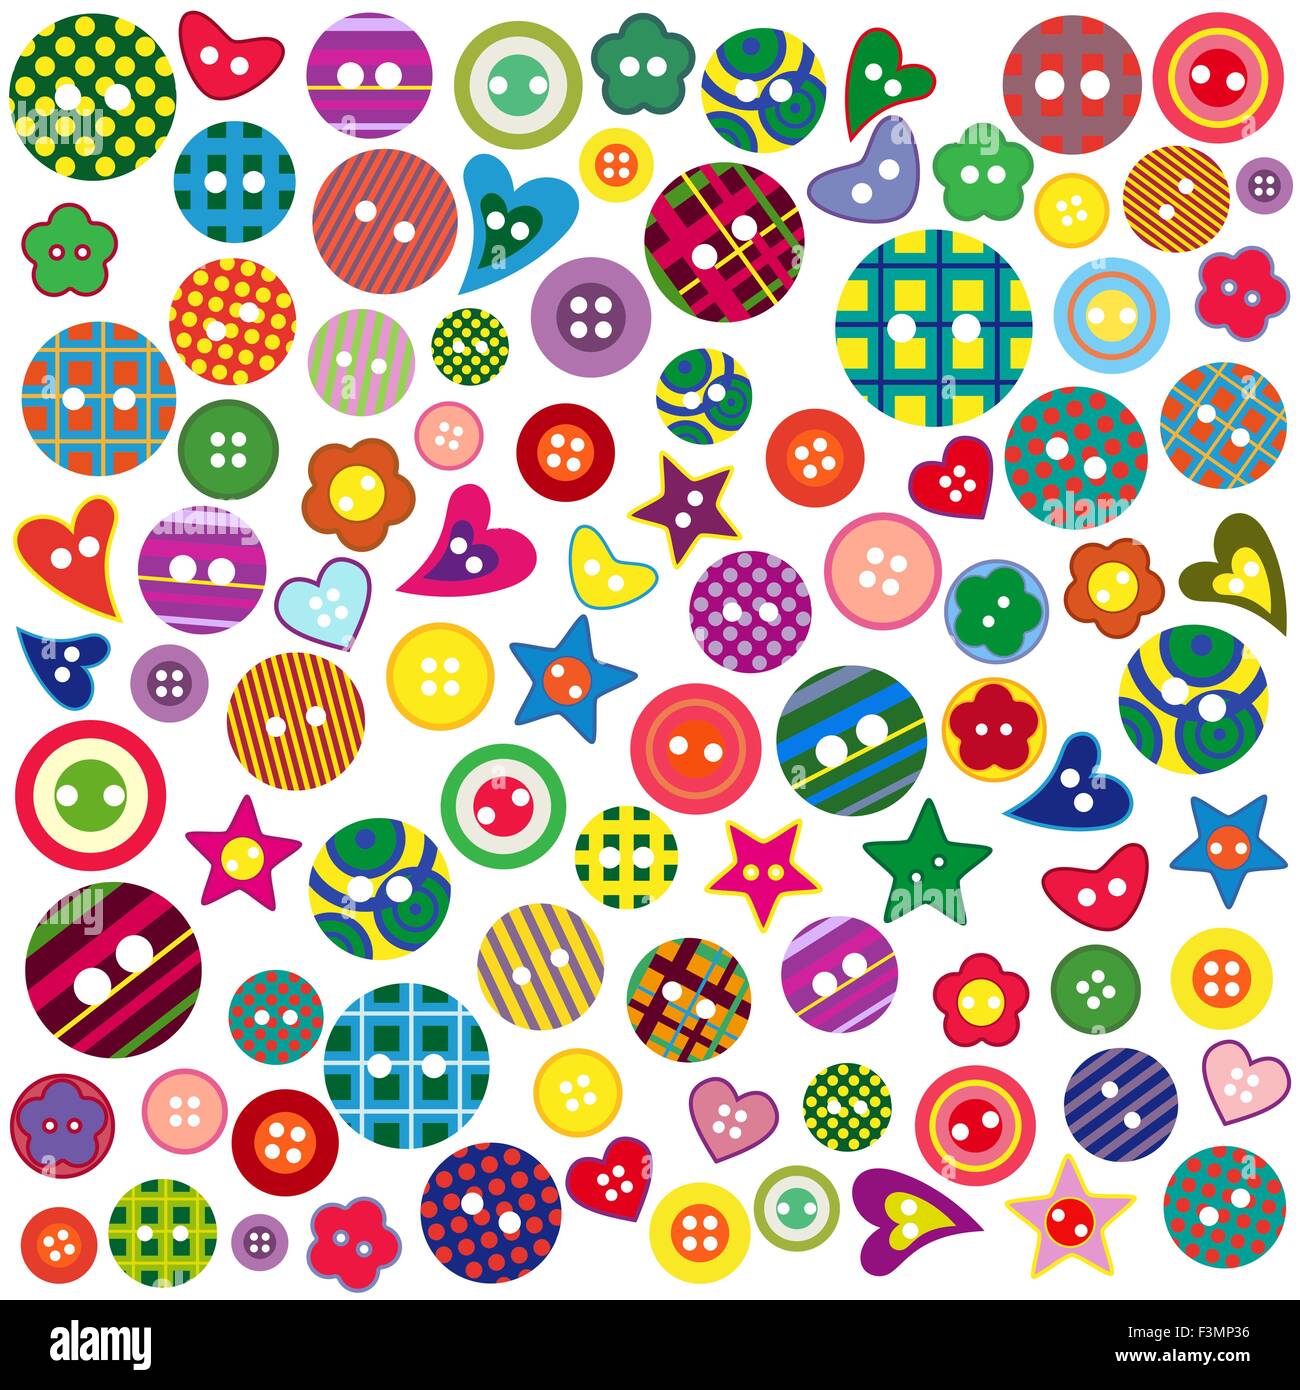 Molti colorati pulsanti ornamentali di varie forme isolate su uno sfondo bianco, grafici vettoriali Illustrazione Vettoriale